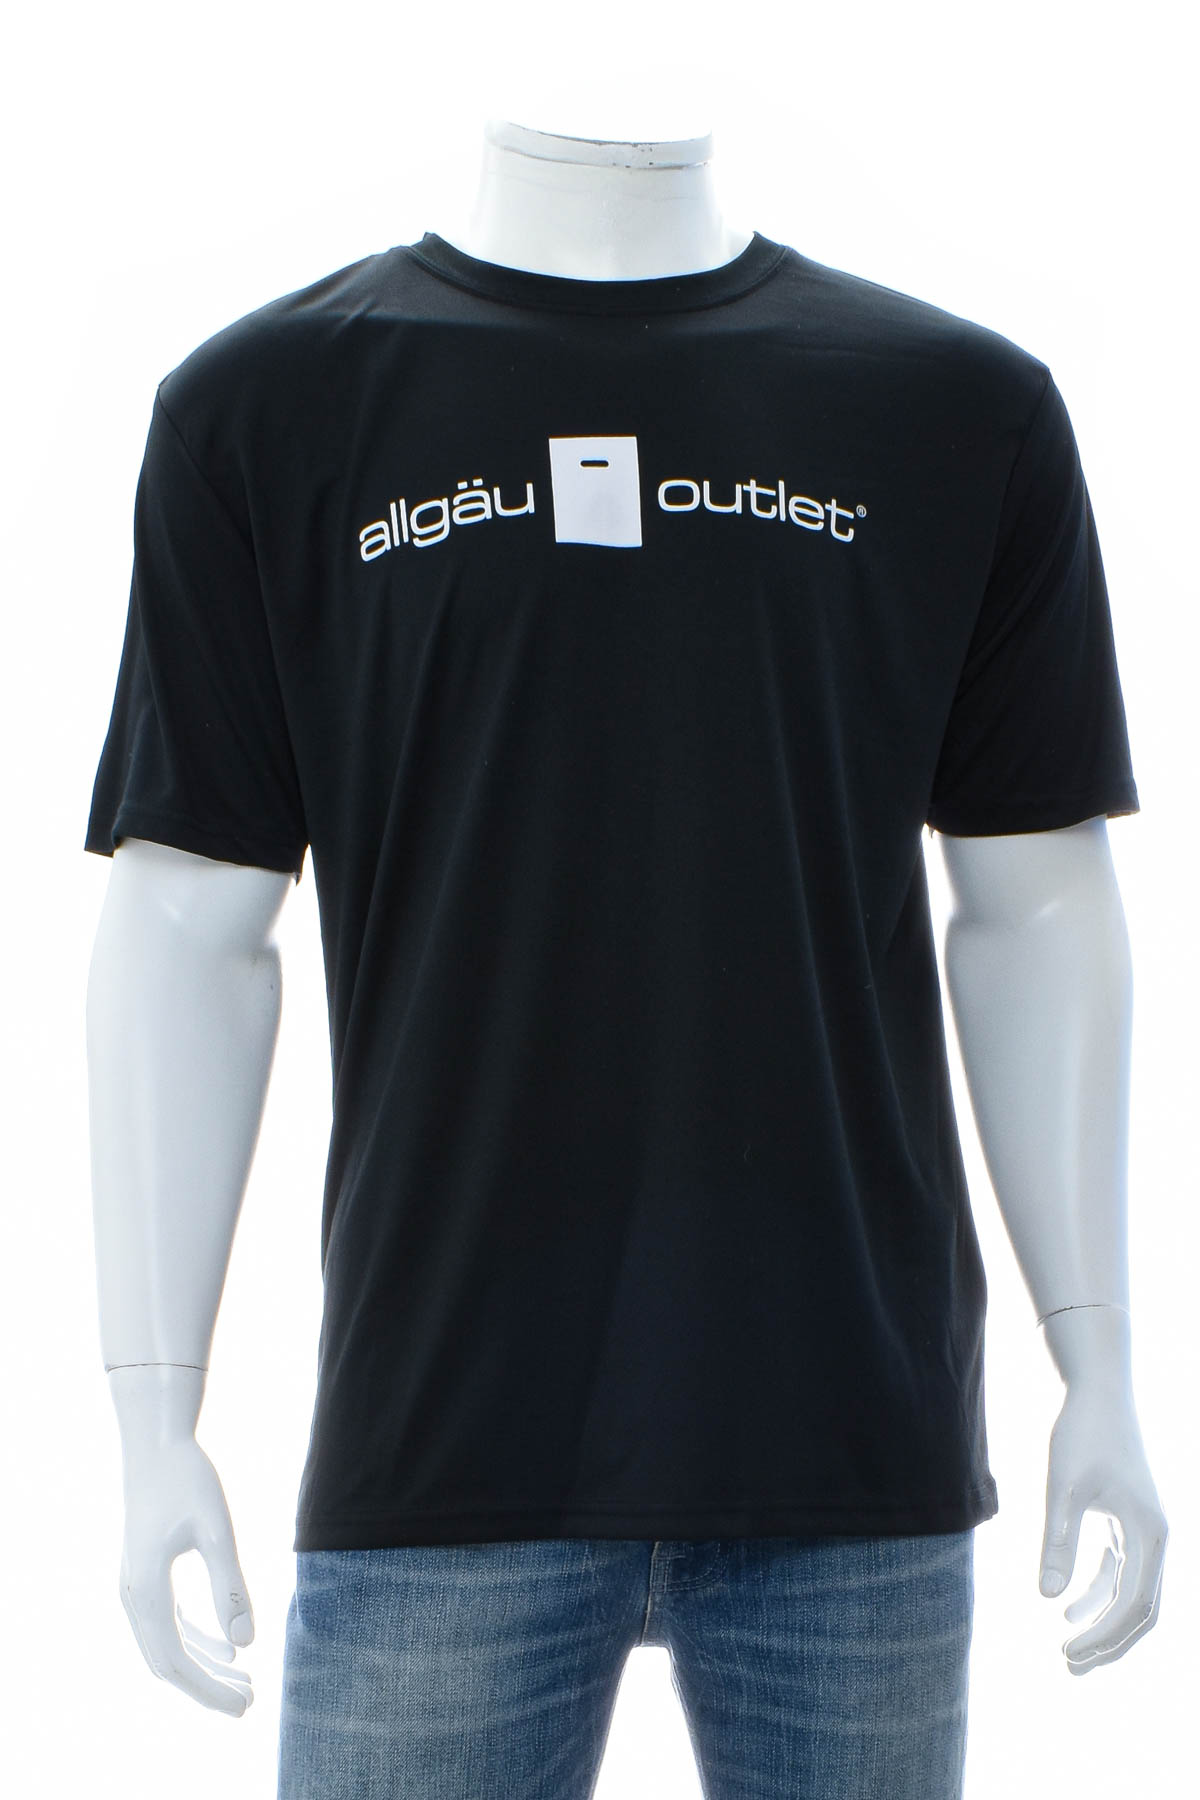 Αντρική μπλούζα - Allgau Outlet - 0